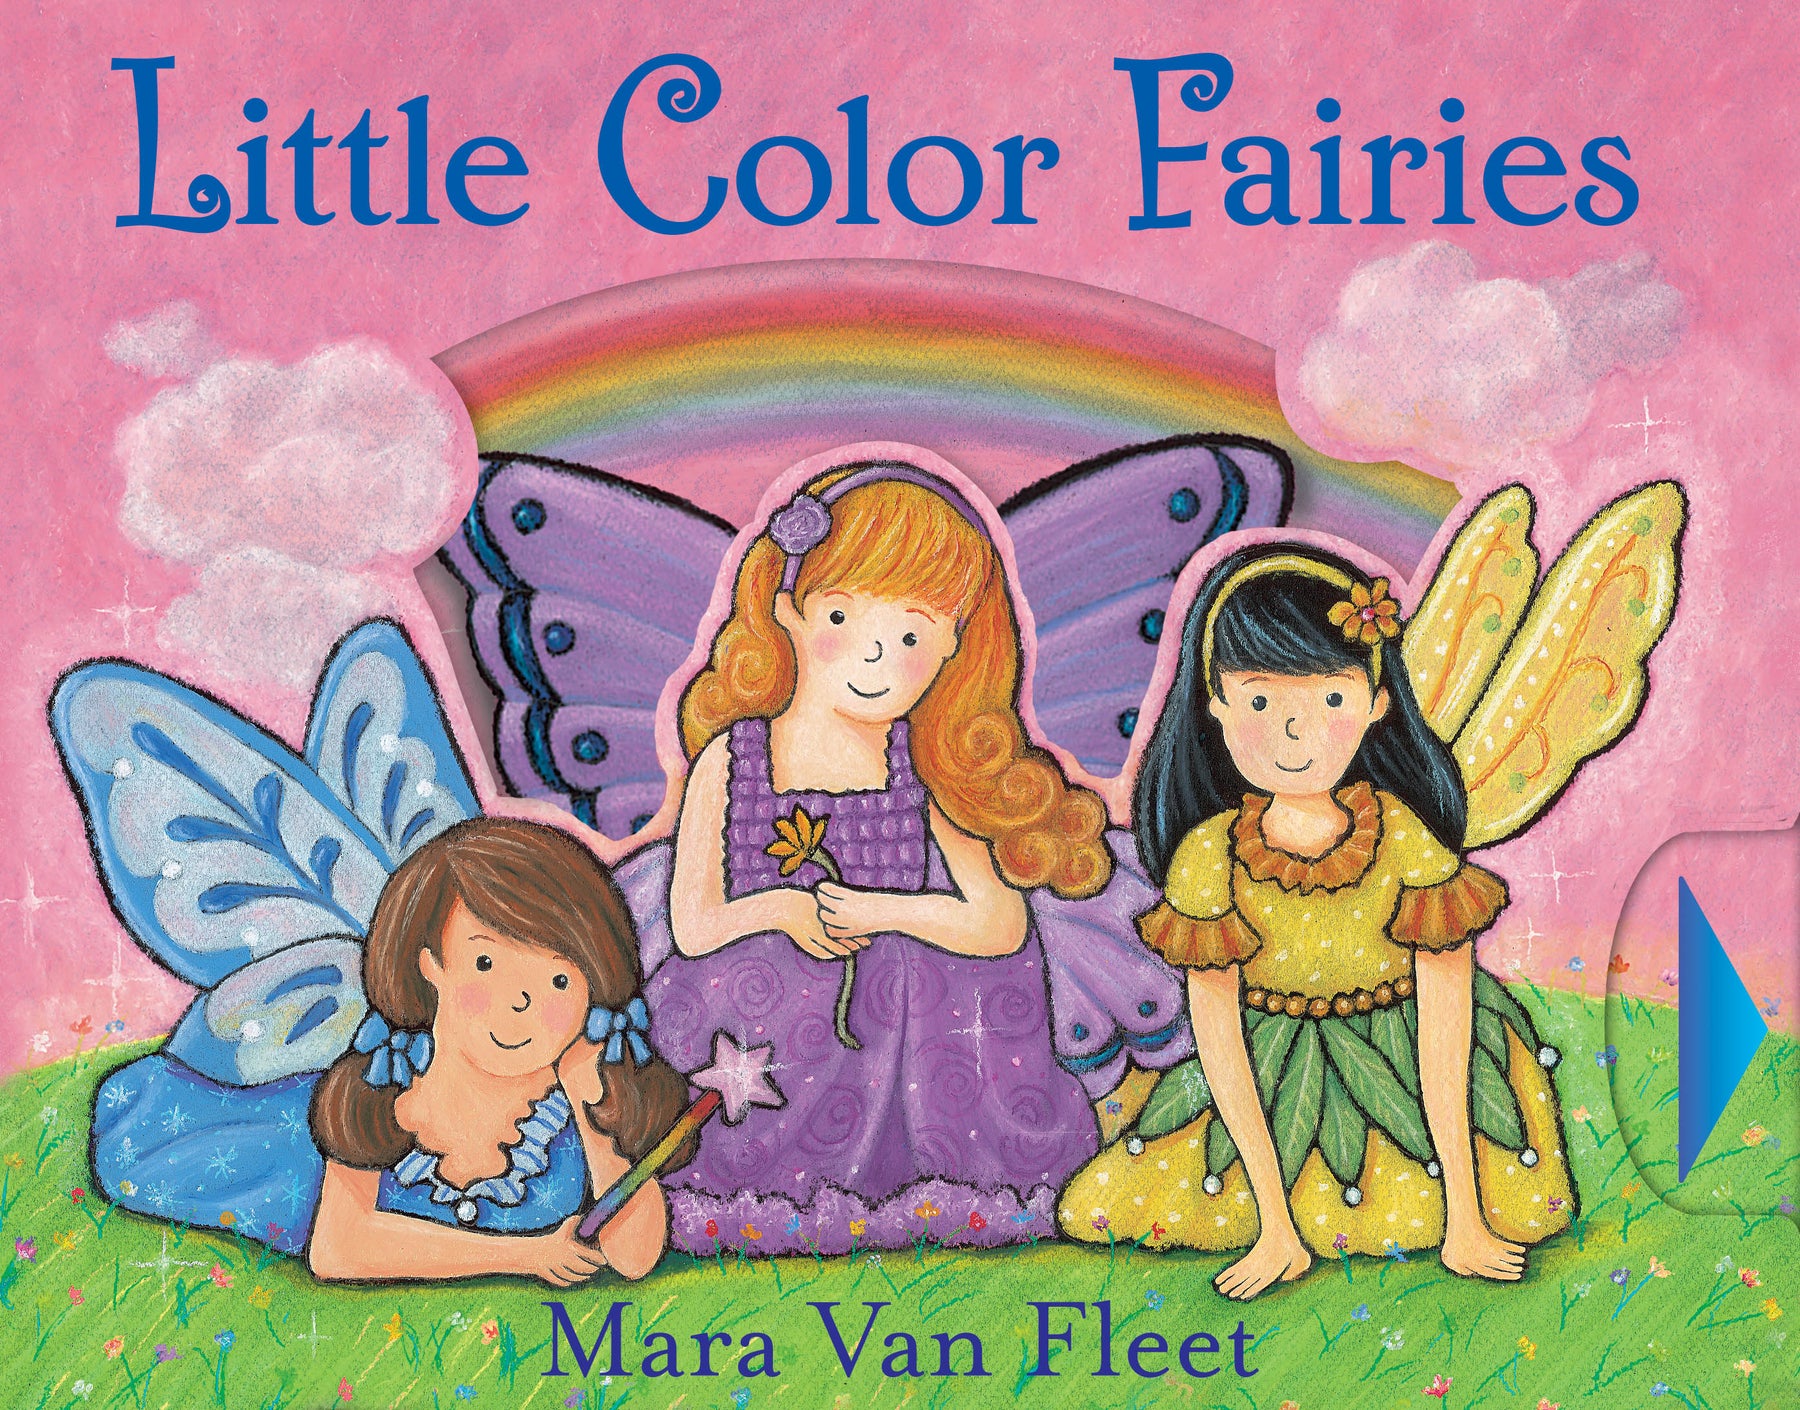 Little Color Fairies - JKA Toys